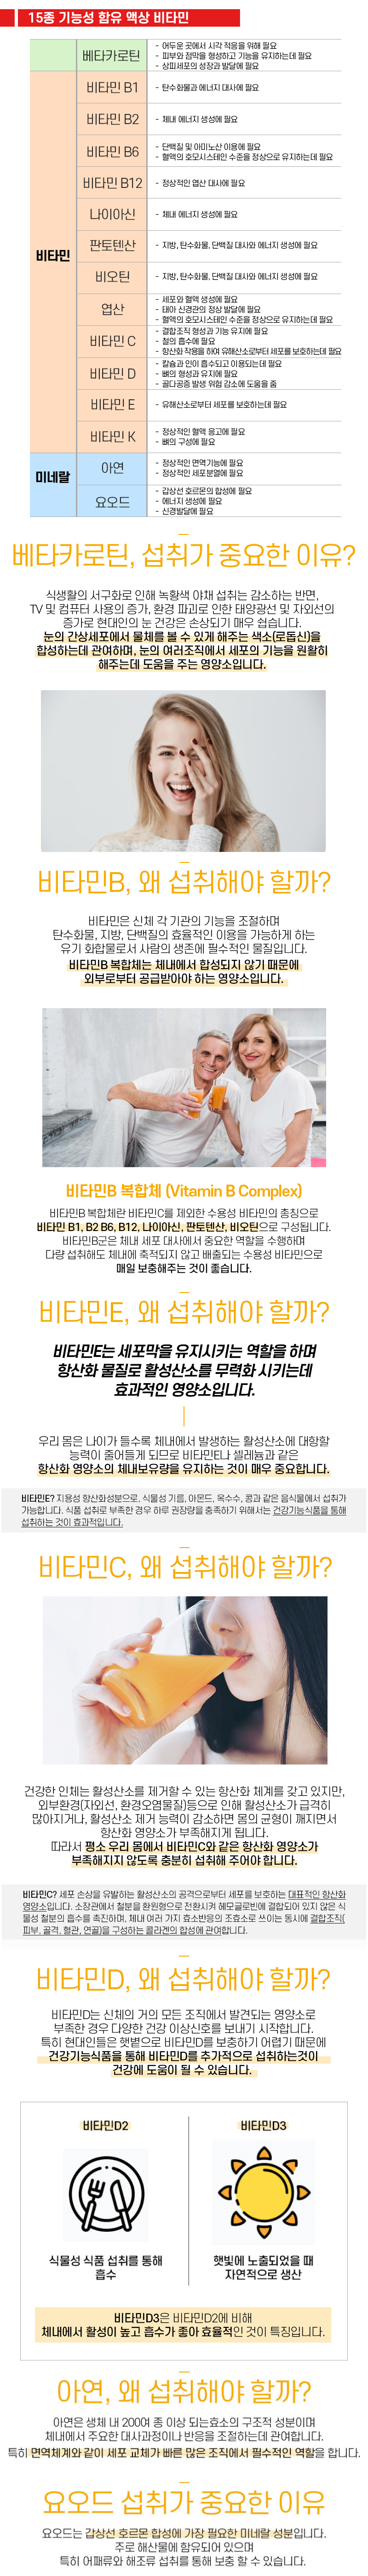 로트벡쉔 이뮨샷 올인원 비타민 플러스 1BOX(10병) - 고함량 멀티 비타민 앰플